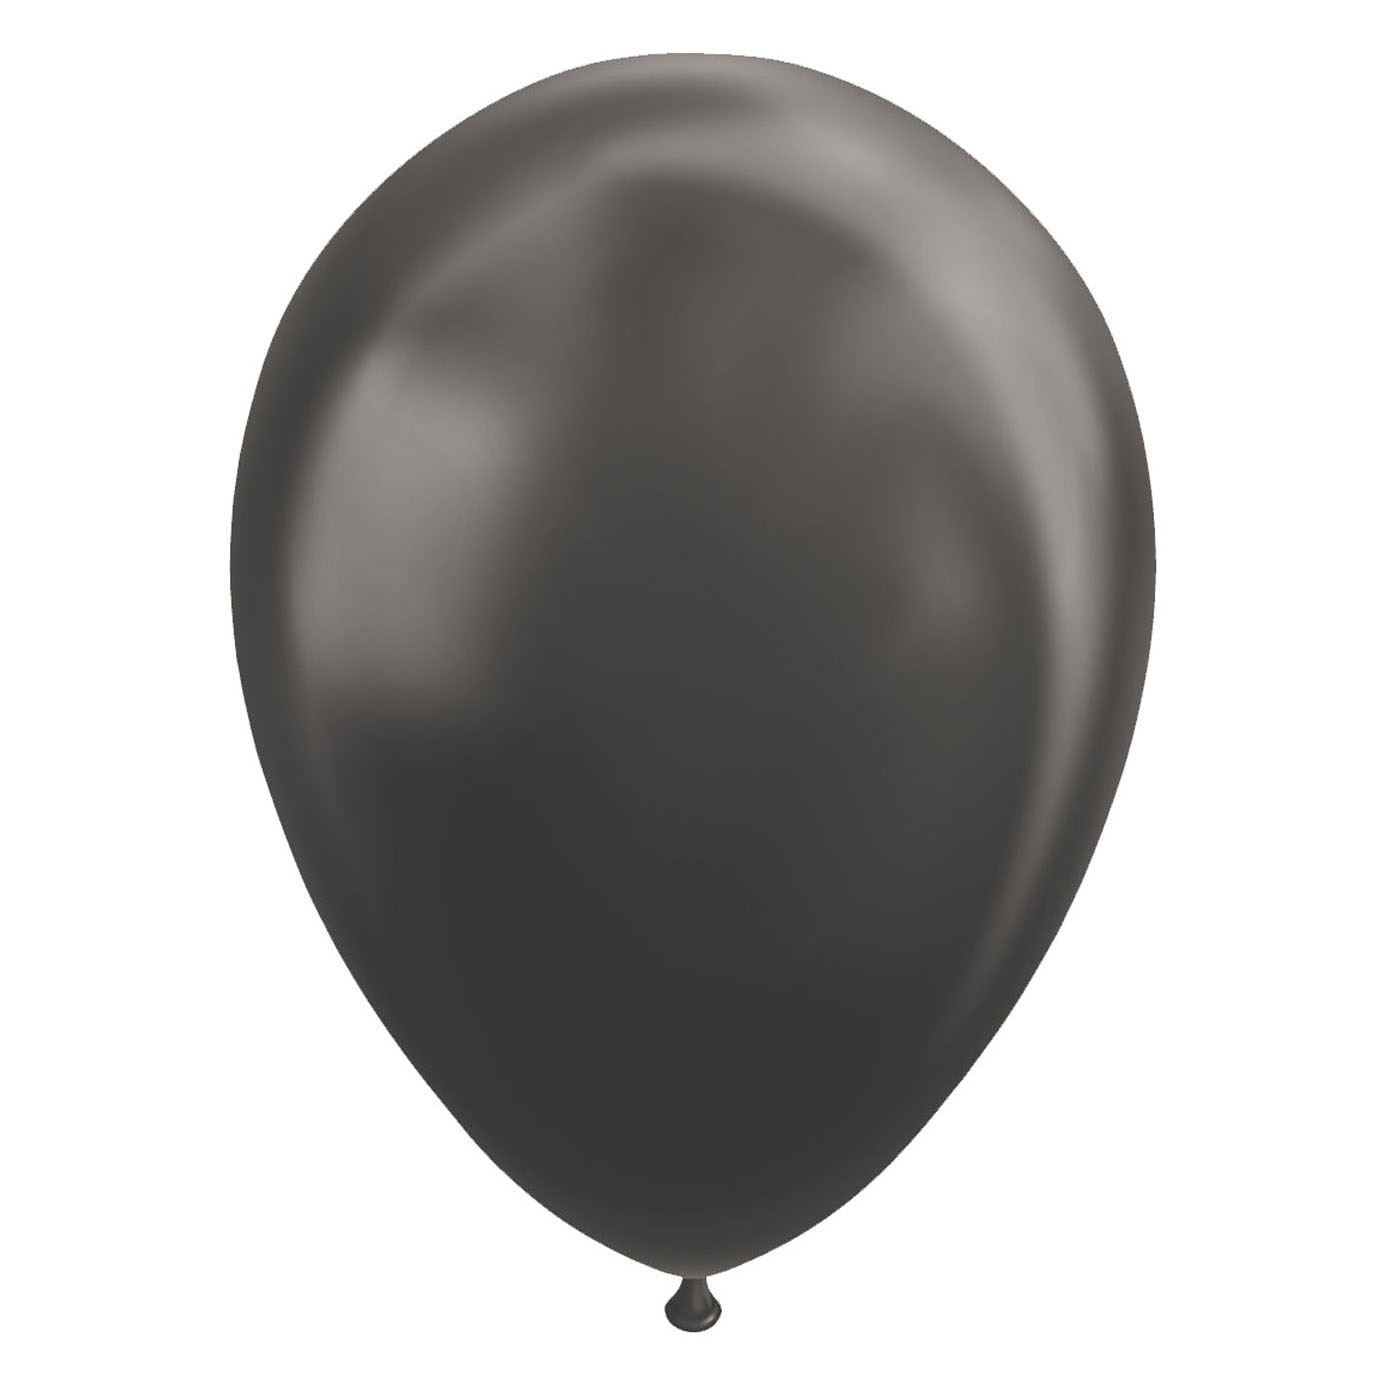 Globos Ballonnen Metallic Zwart 30cm, 10st.